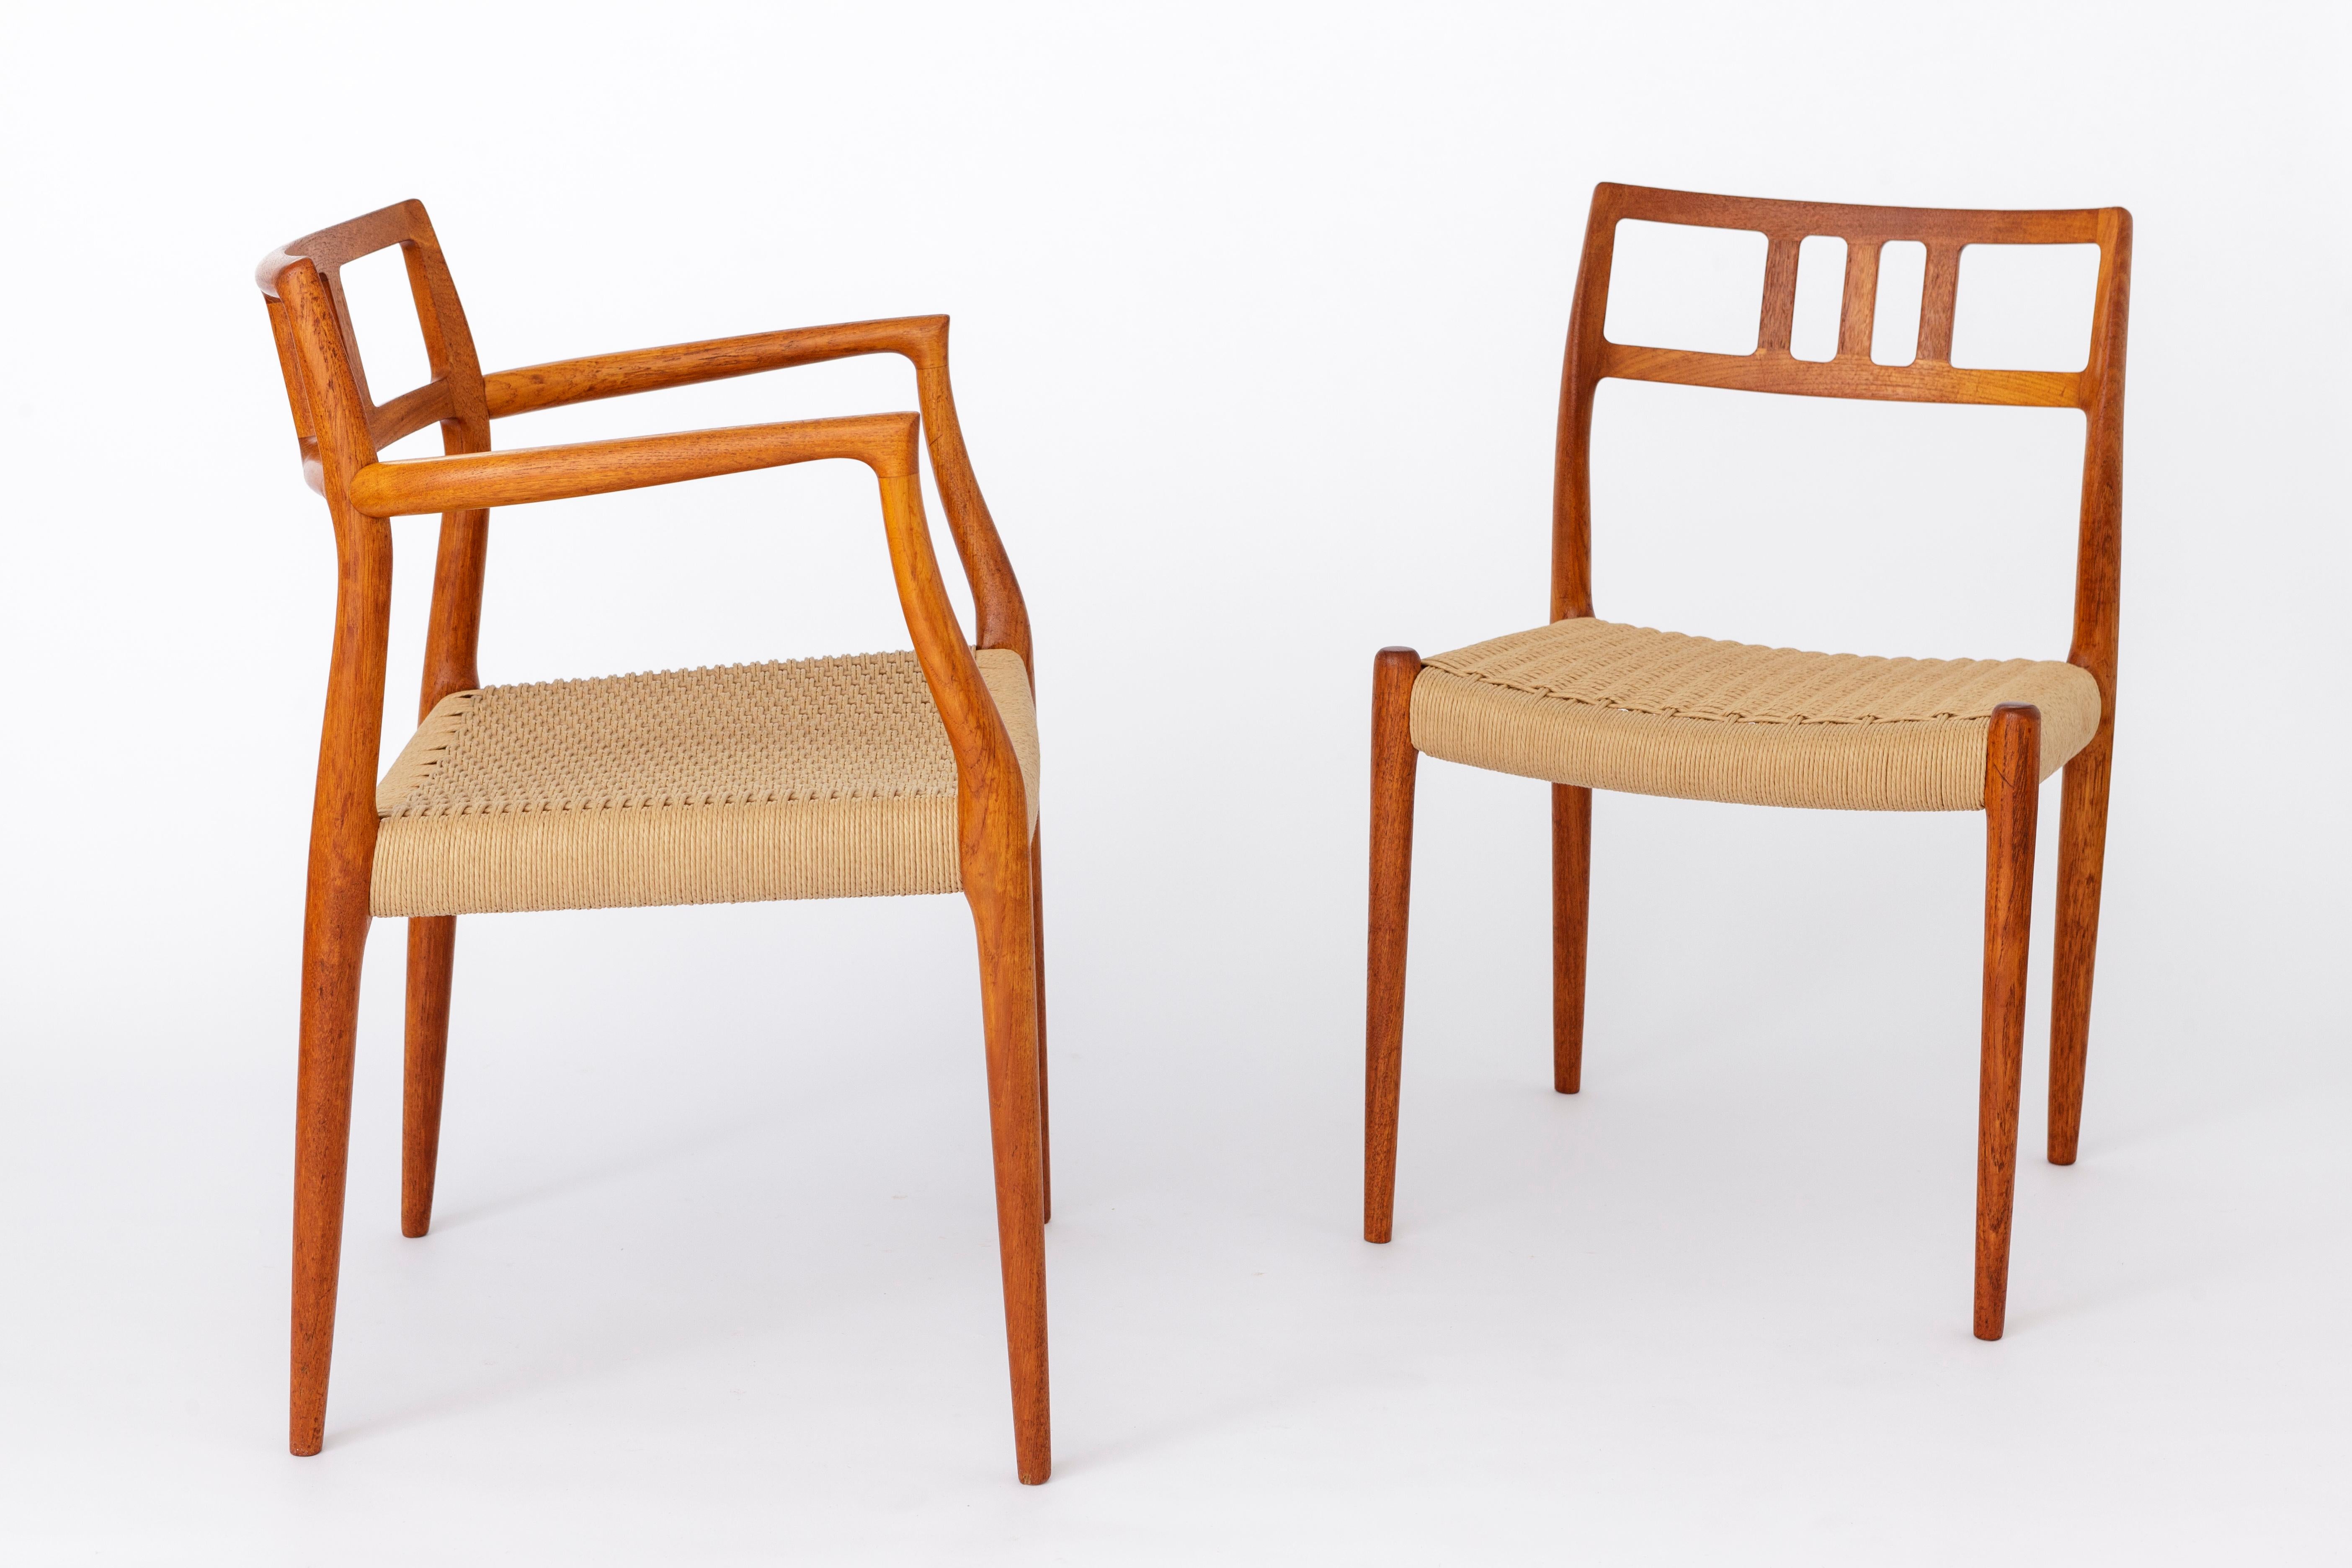 Grand ensemble de chaises Niels Moller des années 1960. 
Le prix affiché est celui d'un ensemble de 9 chaises (1 fauteuil + 8 chaises d'appoint). 
Le fauteuil est le modèle 64 des années 1960. 
Les 8 chaises d'appoint sont le modèle 79 des années